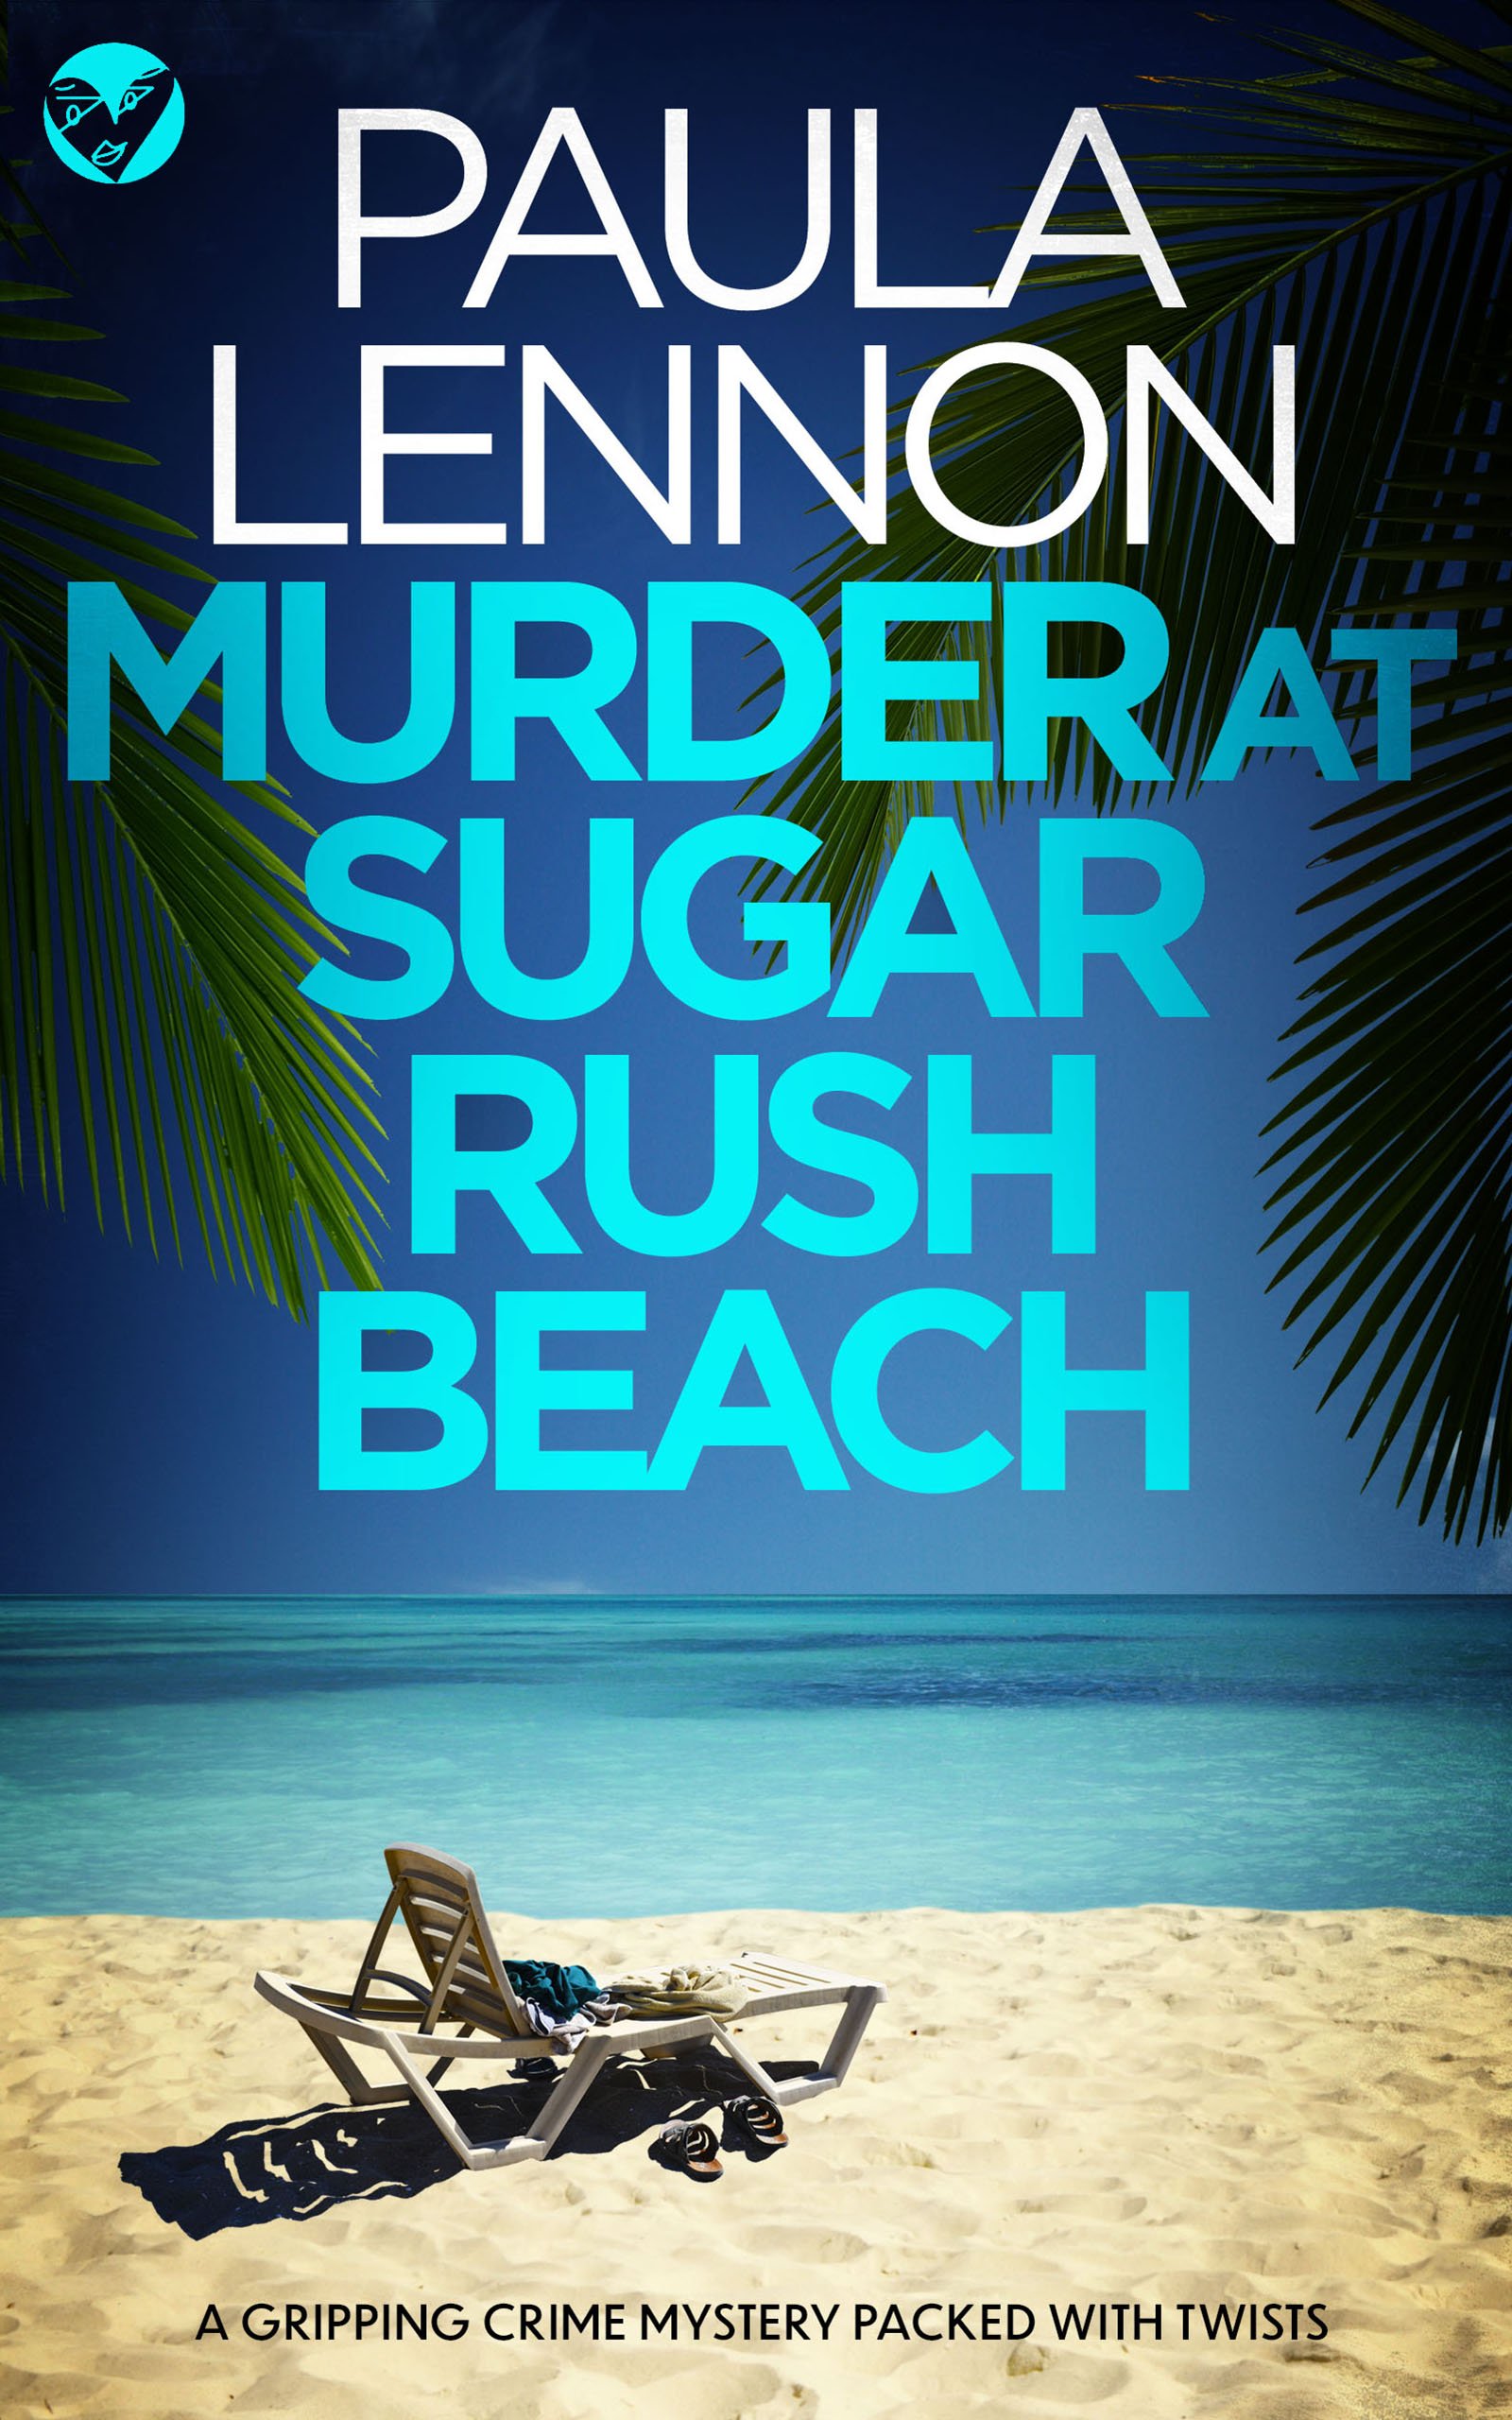 MURDER AT SUGAR RUSH BEACH publish cover.jpeg